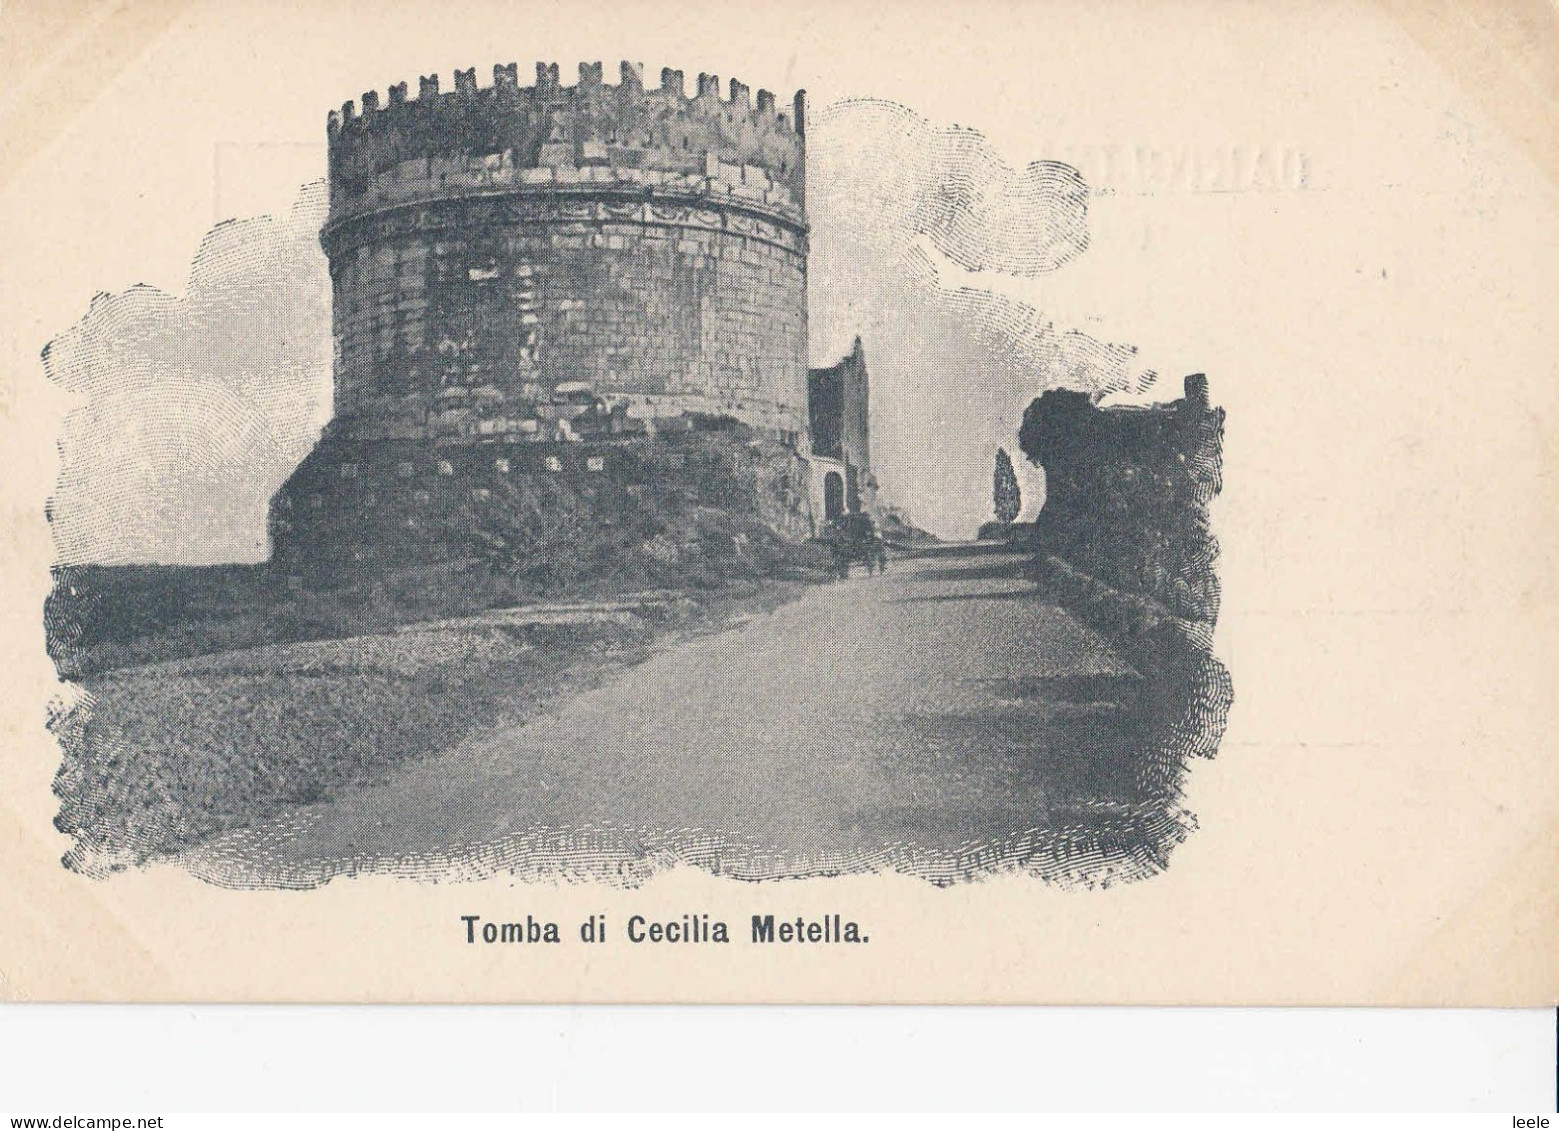 F77. Vintage Postcard. Tomb Of Cecilia Metella, Nr Rome. - Andere Monumente & Gebäude